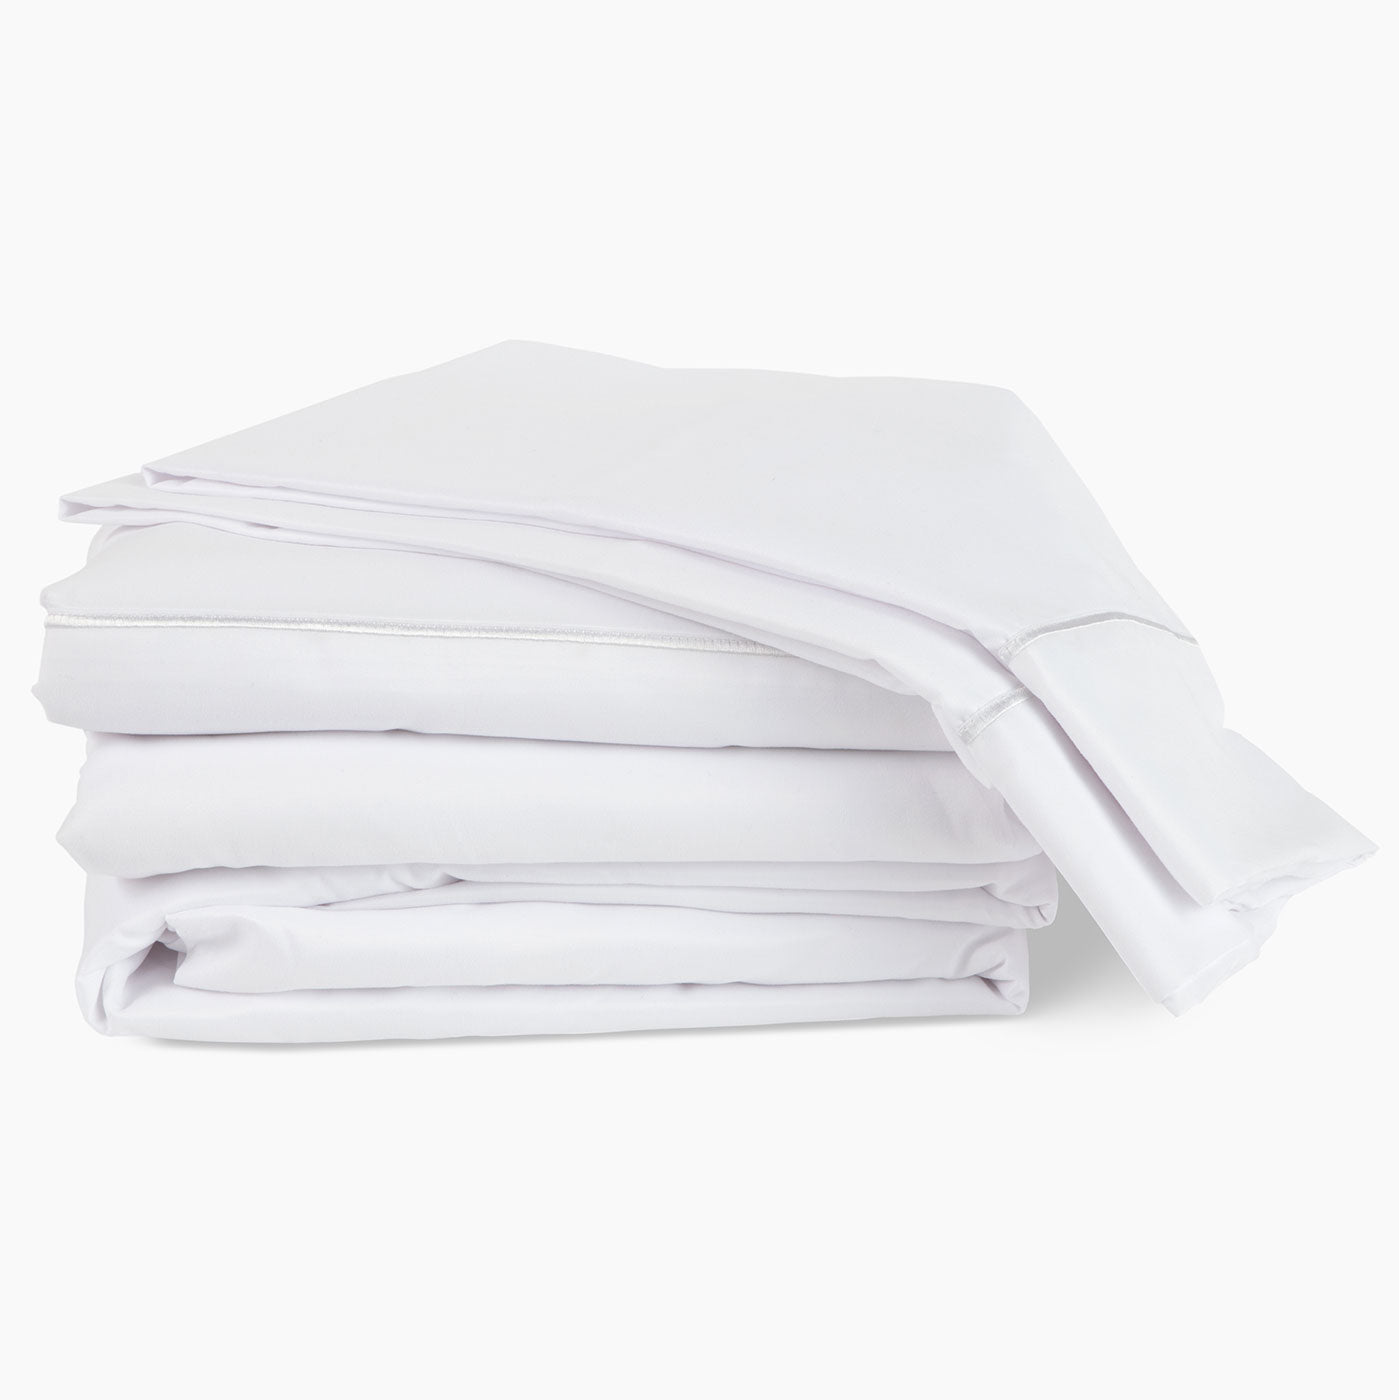 Image of a neatly folded white sheet set 